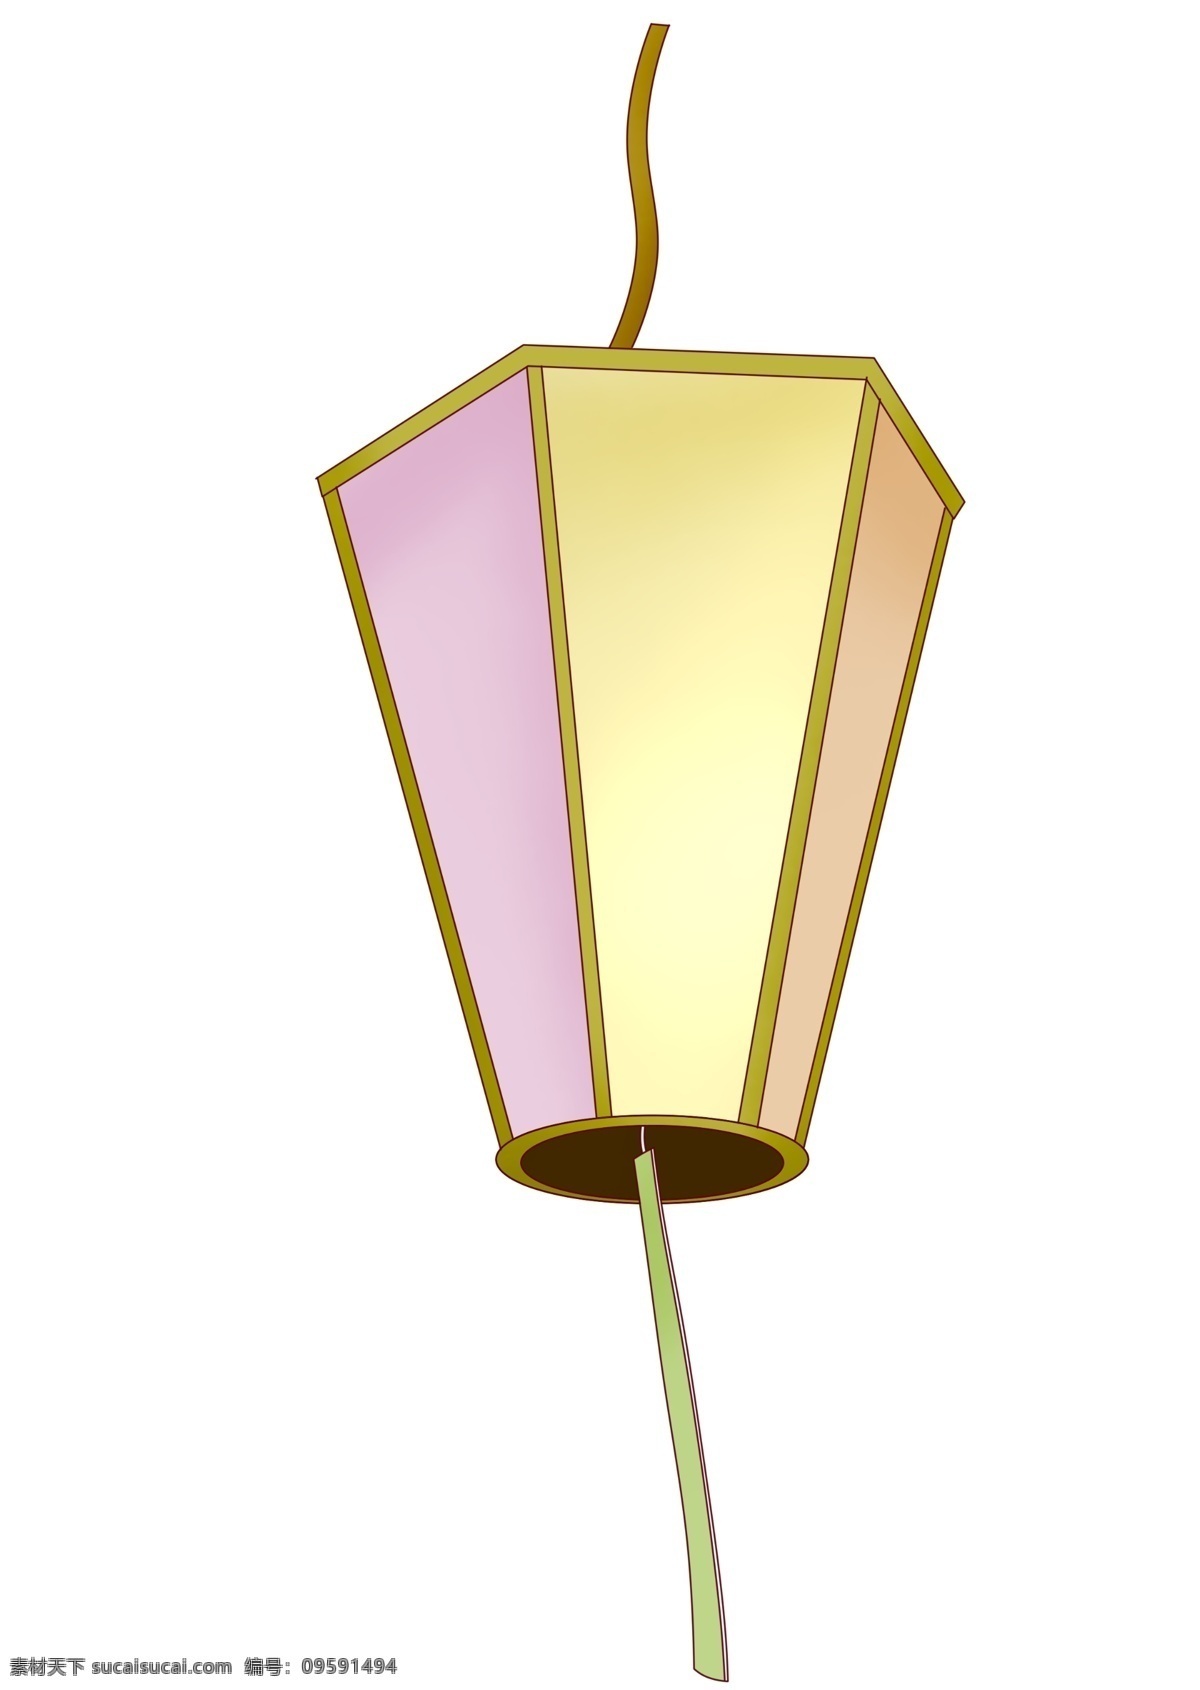 日本 灯笼 装饰 插画 日本灯笼 漂亮的灯笼 灯笼装饰 灯笼插画 立体灯笼 卡通灯笼 创意的灯笼